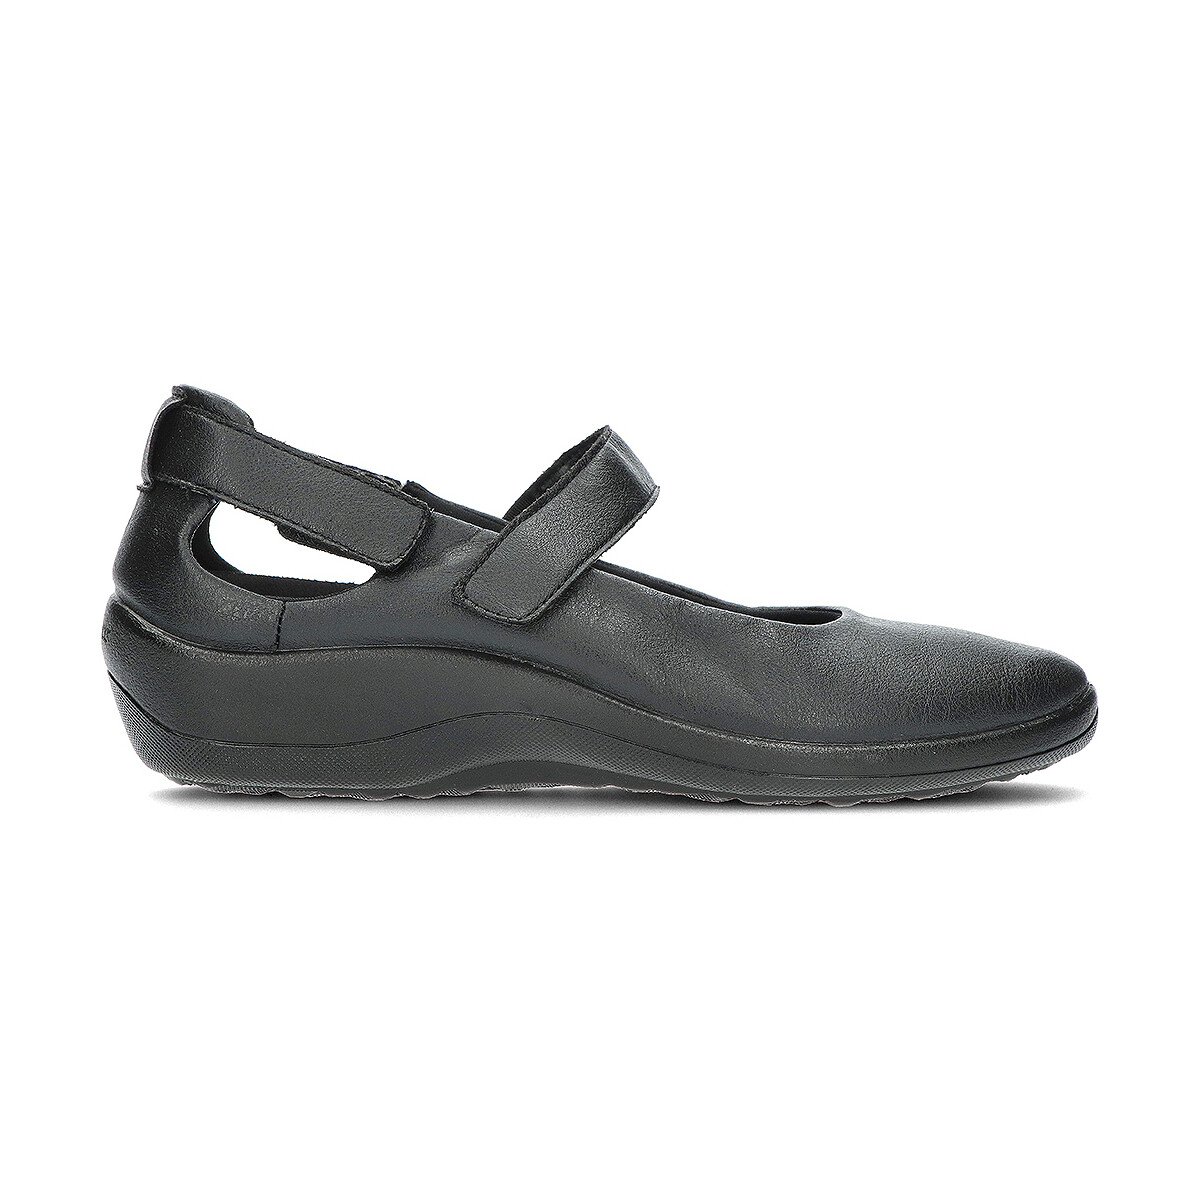 Zapatos Mujer Bailarinas-manoletinas Arcopedico MINAMI 4706 Negro